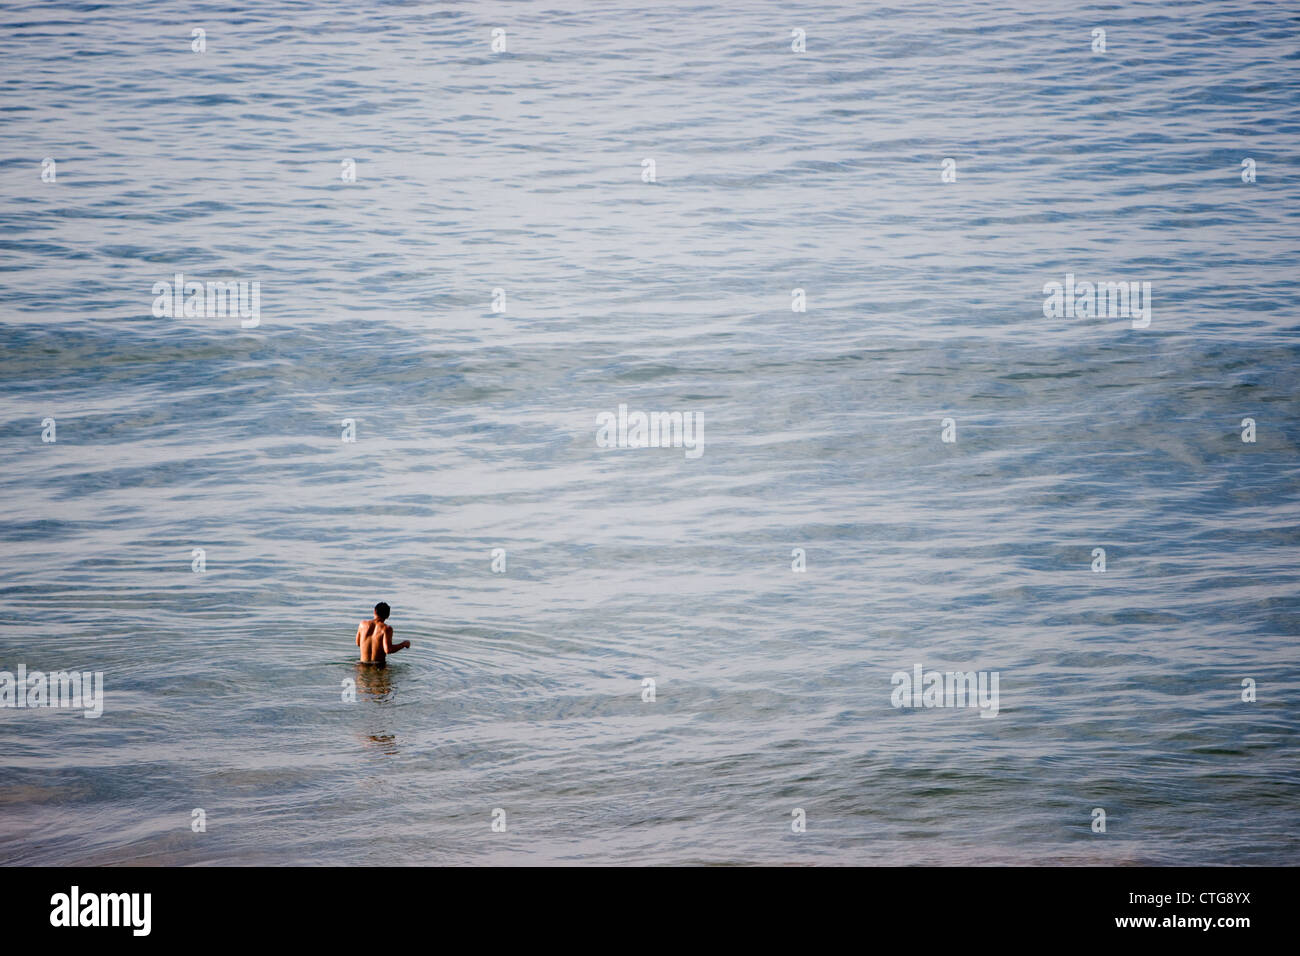 Nuotatore nel blu del mare in Marocco. Foto Stock